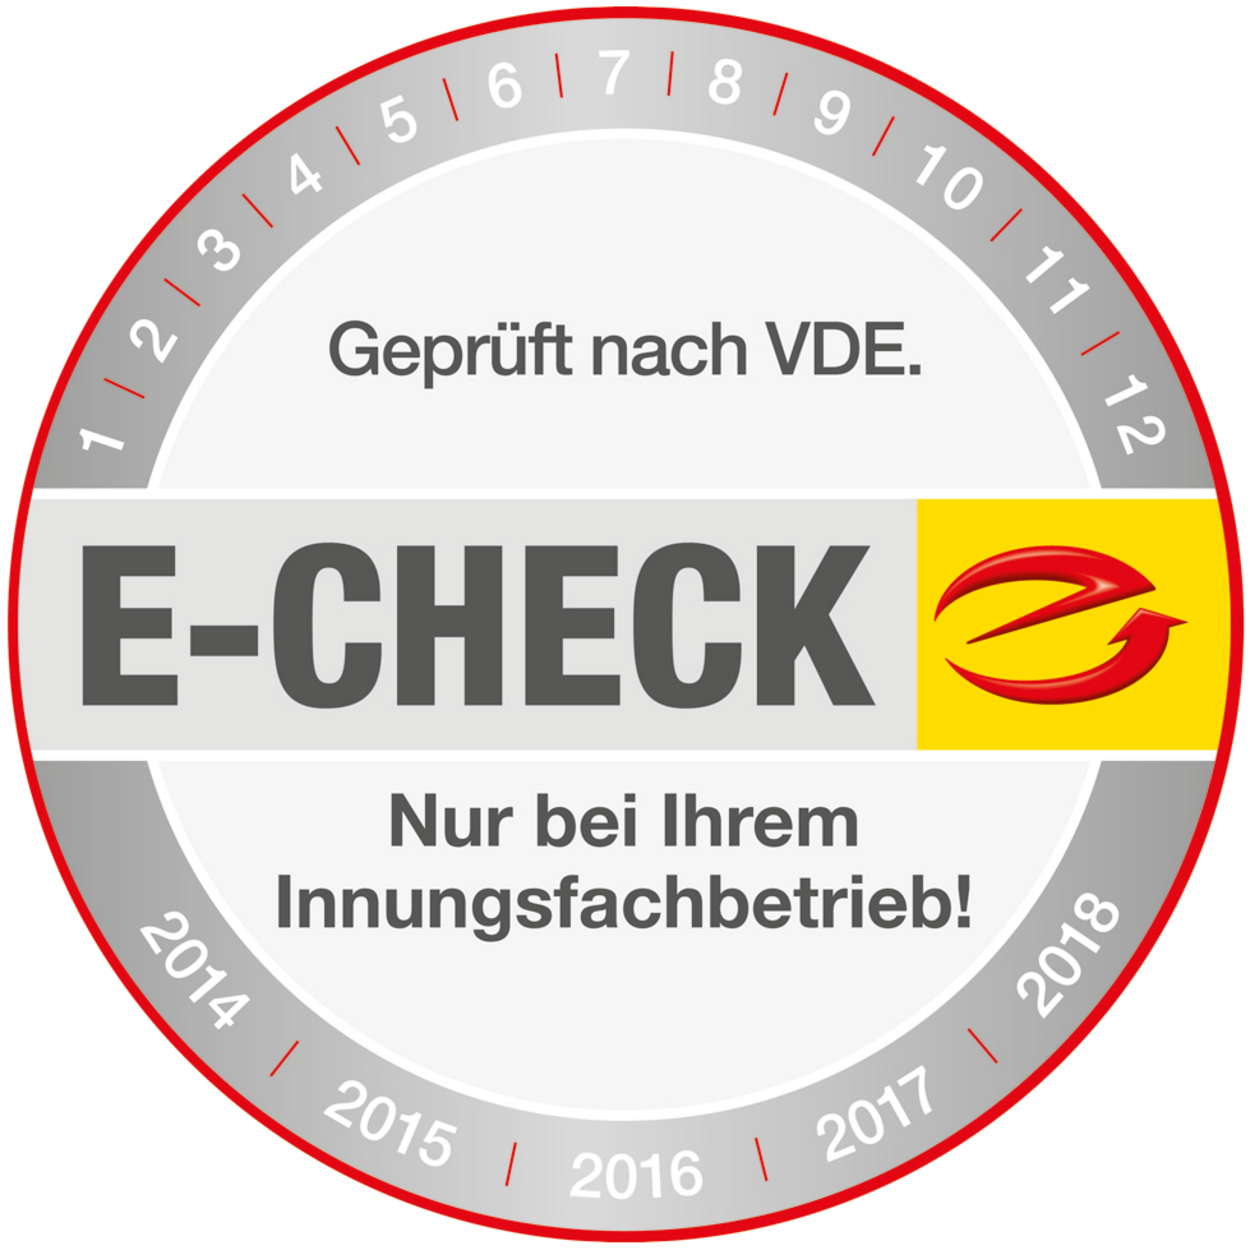 Der E-Check bei Elektro Haubner GmbH in Roth